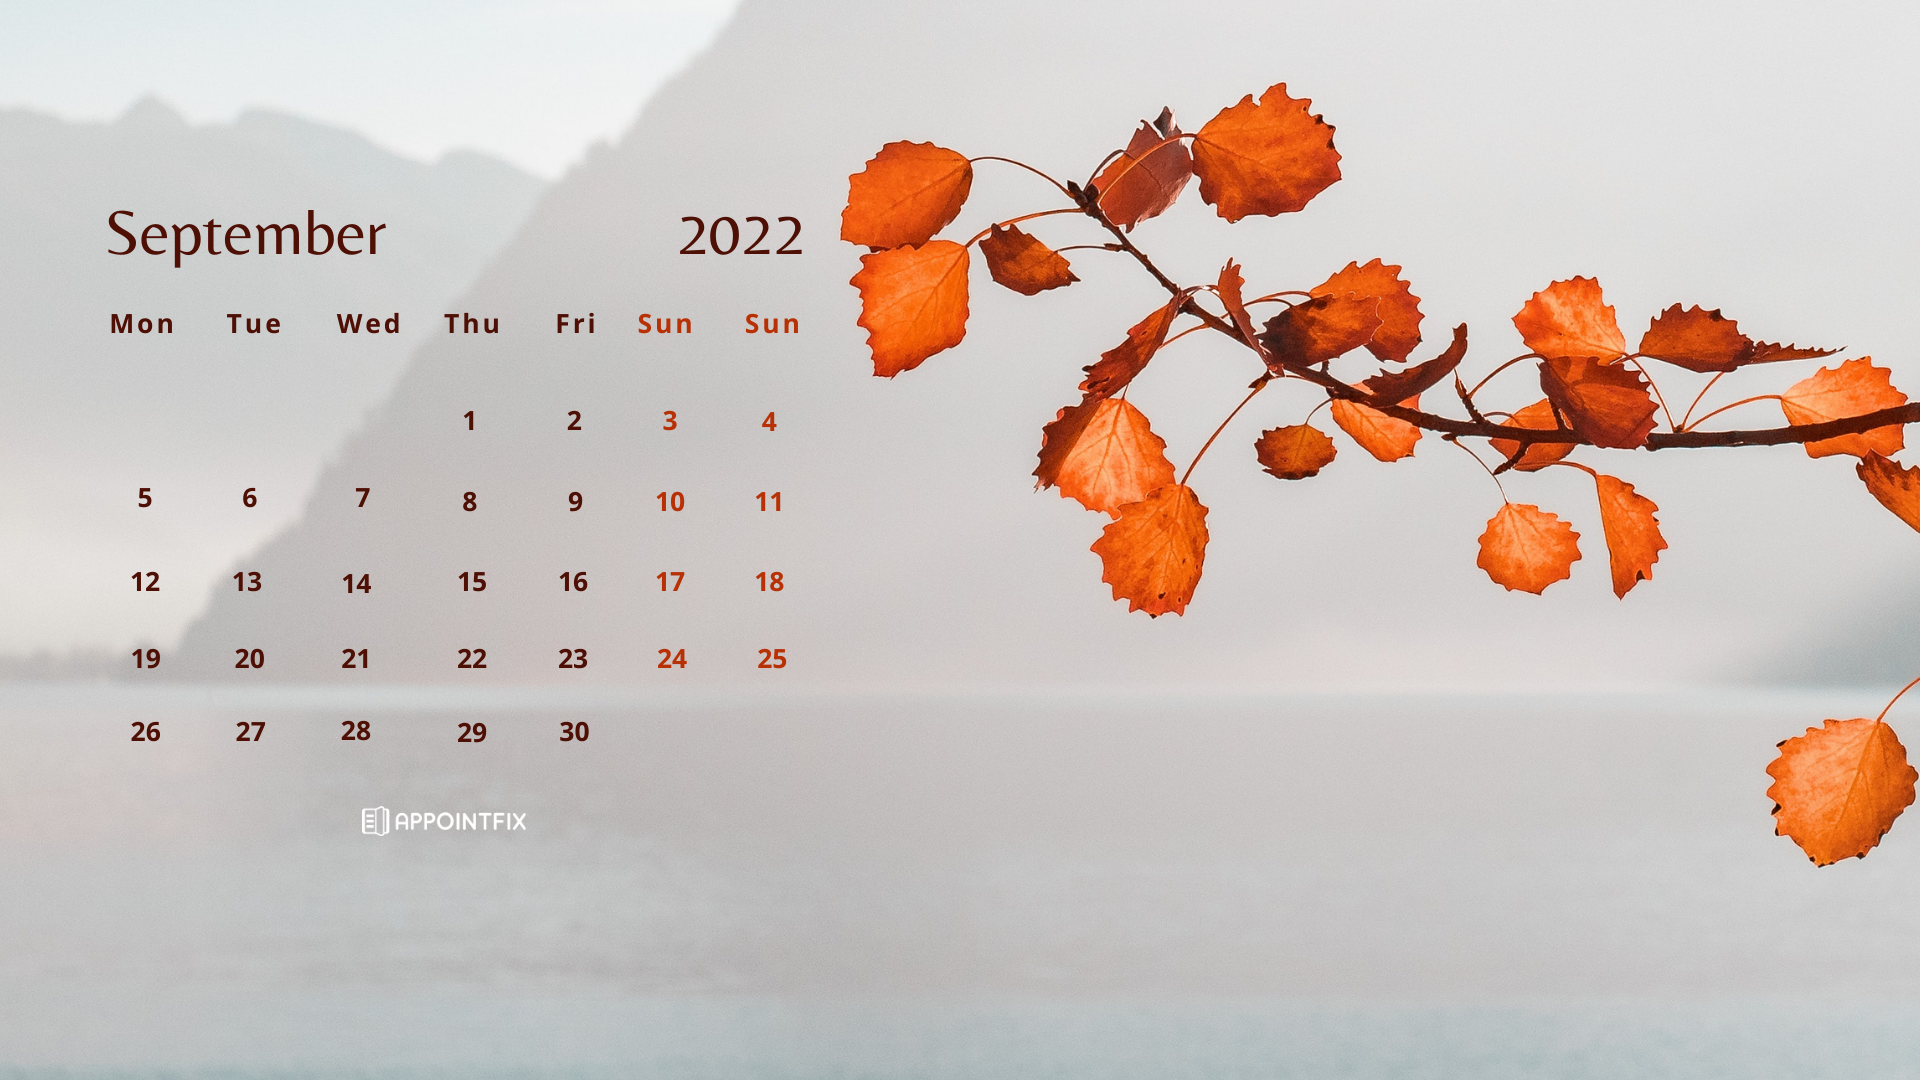 Tháng 1 2022: Tháng 1 là thời điểm hoàn hảo để bắt đầu một năm mới. Nếu bạn đang tìm kiếm cảm hứng và động lực cho năm mới sắp tới, hãy xem những hình ảnh đầy tính nghệ thuật và sự pha trộn màu sắc độc đáo của tháng 1 năm